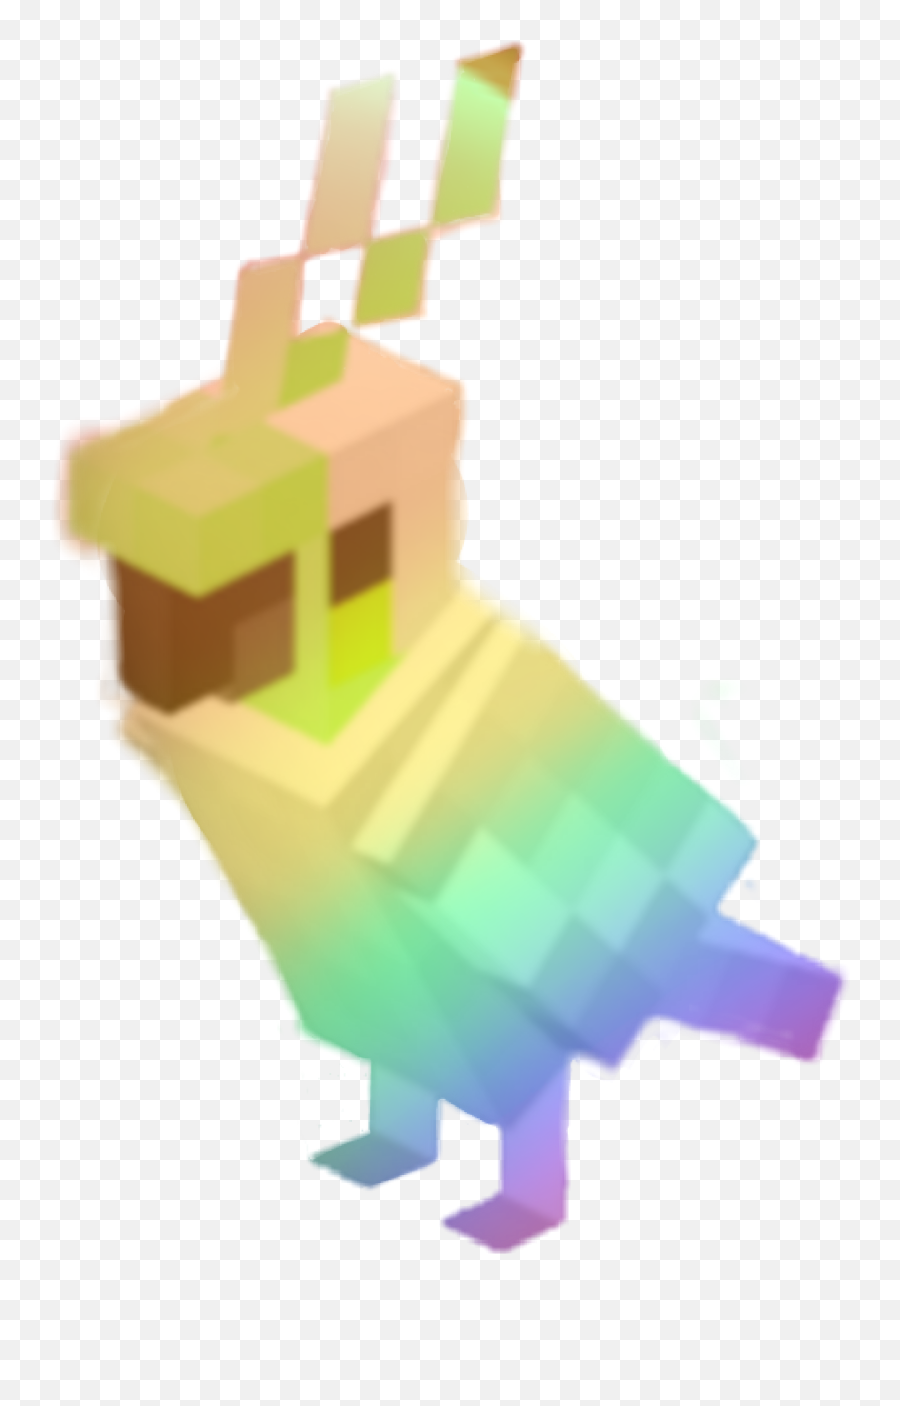 Popular And Trending Minecraft Parrot Transparent Background Emoji Parrot Emoji Free Emoji Png Images Emojisky Com